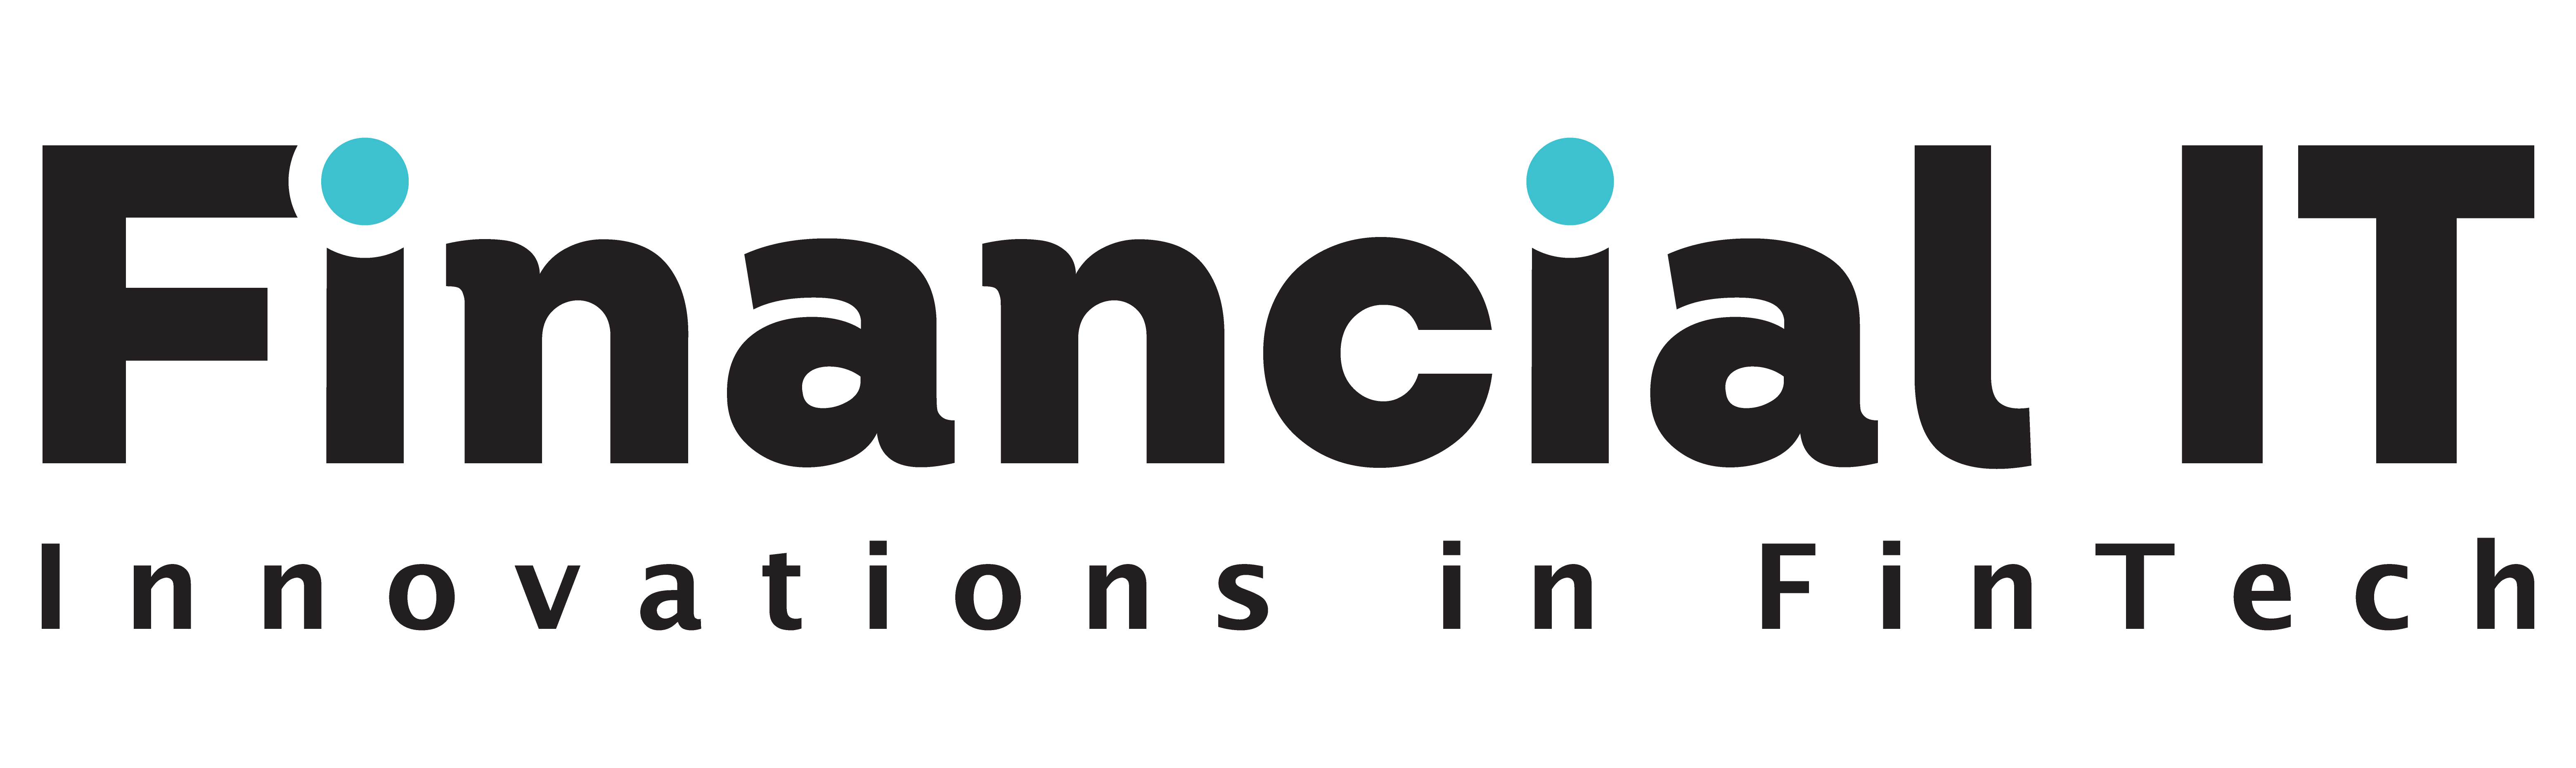 Financial_IT_Logo